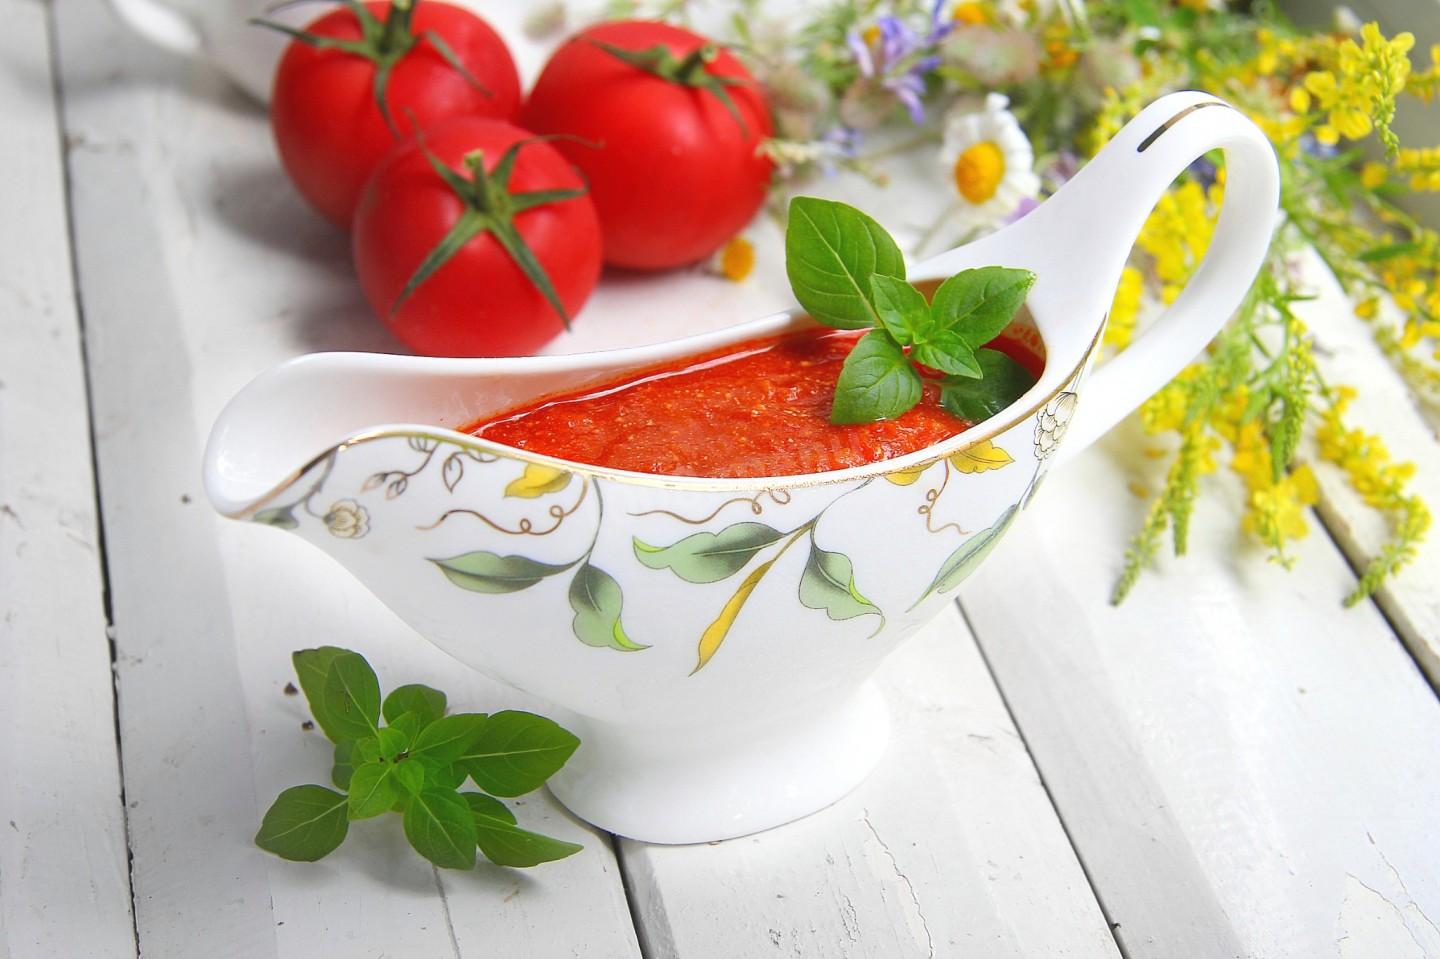 Универсальный сметанно-томатный соус: рецепты приготовления